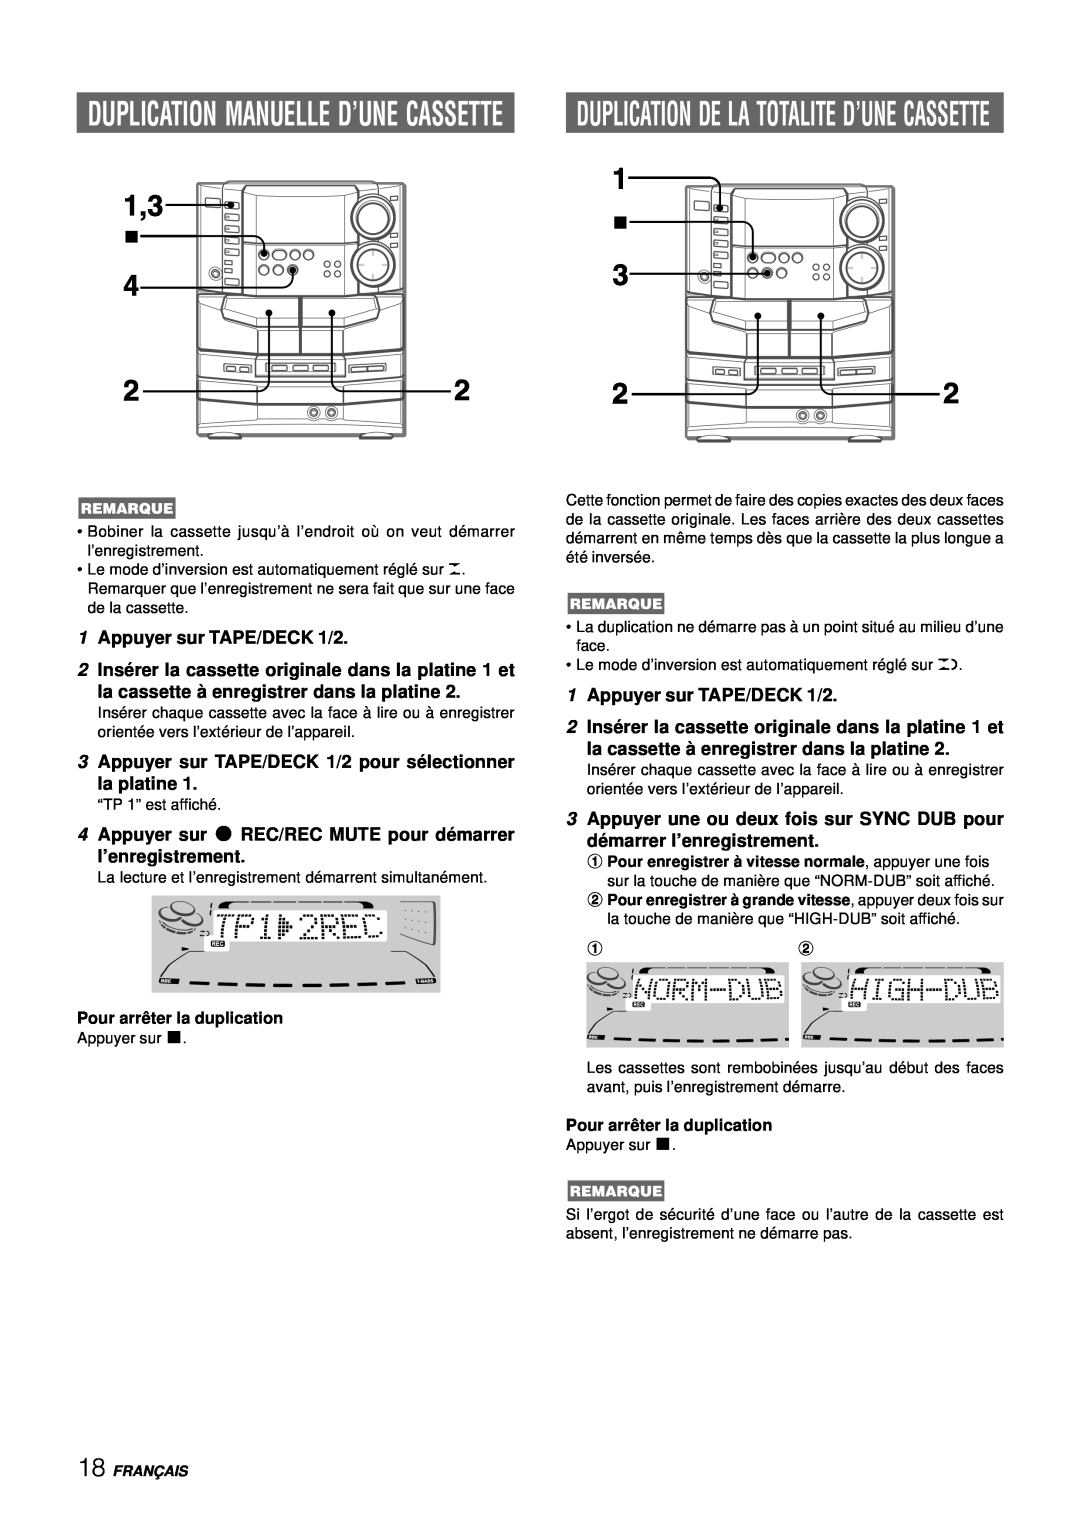 Aiwa NSX-DS8 Duplication Manuelle D’Une Cassette, 1Appuyer sur TAPE/DECK 1/2, la cassette à enregistrer dans la platine 